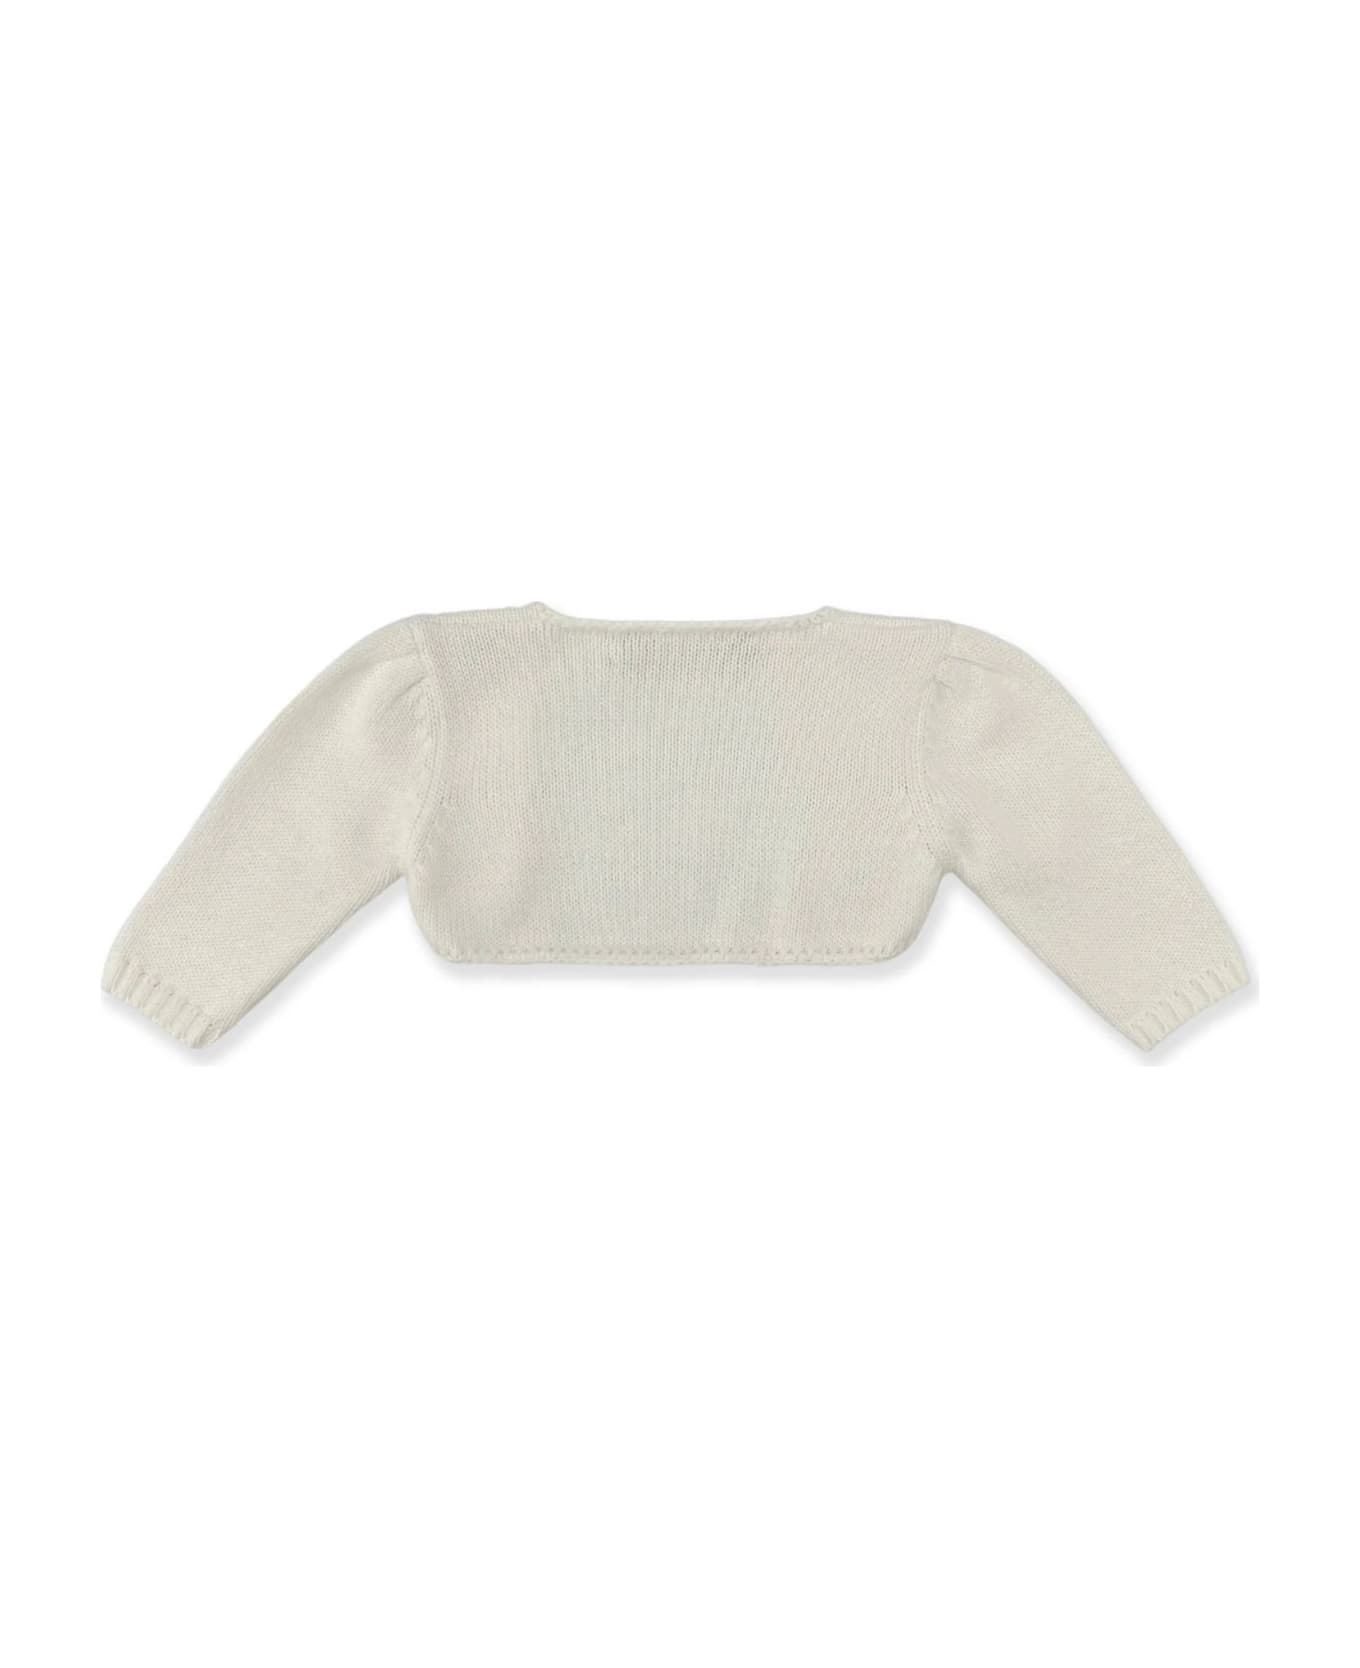 La stupenderia Sweaters White - White